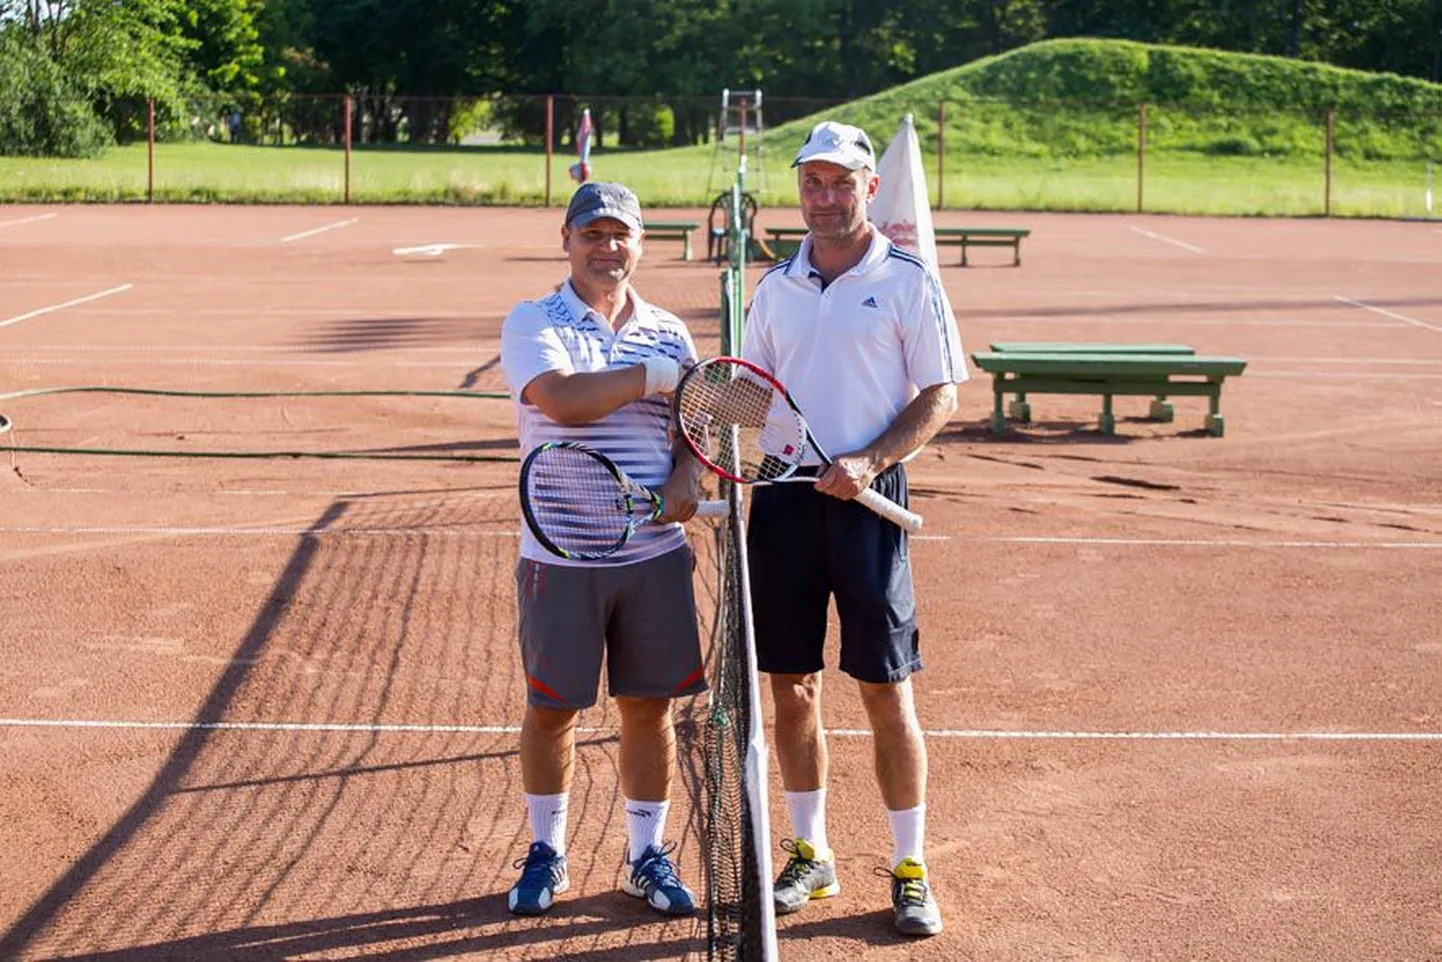 Paidelane Maidu Luts (vasakul) hakkas tennist toksima umbes kuus aastat tagasi. Tennisepisiku süstis temasse sõber Raul Mironov jalgpalliplatsilt, kui kinkis talle 40. sünnipäevaks reketi. Varem mängisid mehed ühes meeskonnas jalgpalli, nüüd ühel platsil tennist ja seda nii kaua, kuni jalad veel liiguvad.